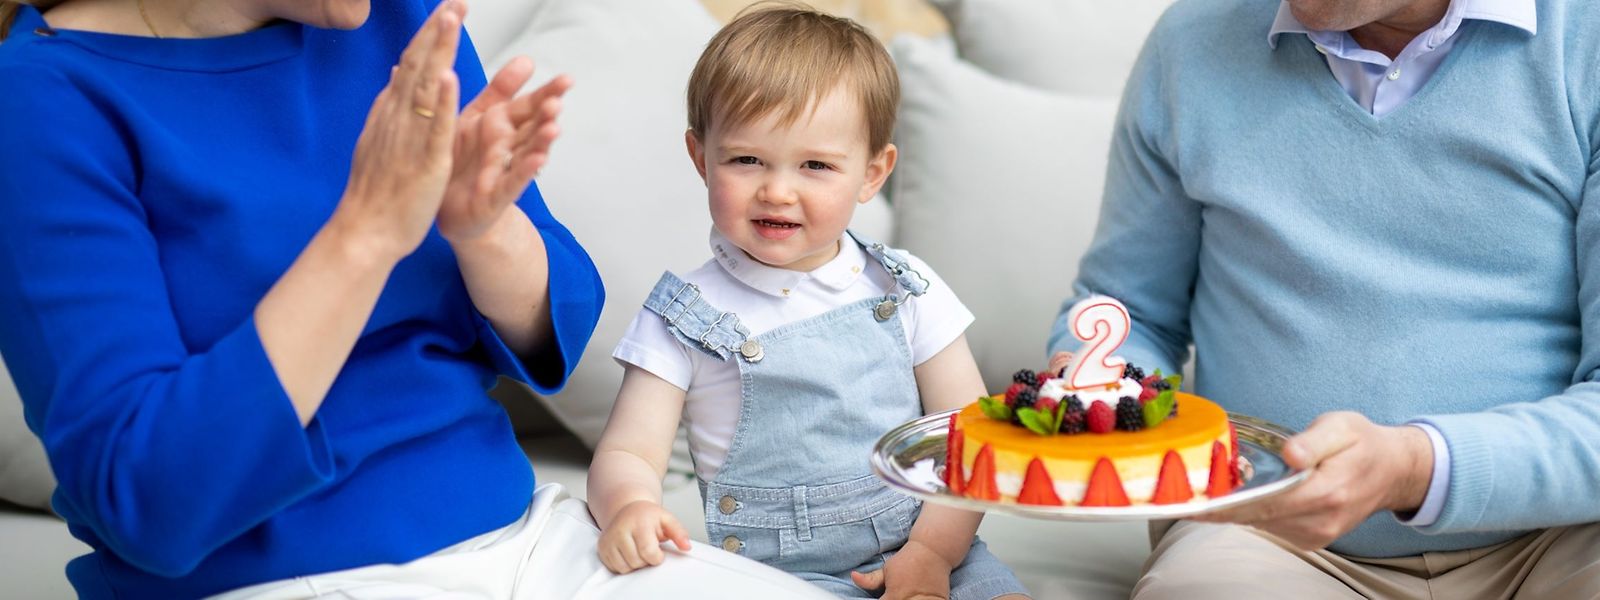 Für Prinz Charles gibt es nur eine (große) Kerze auf dem Kuchen - er wird aber zwei Jahre alt.